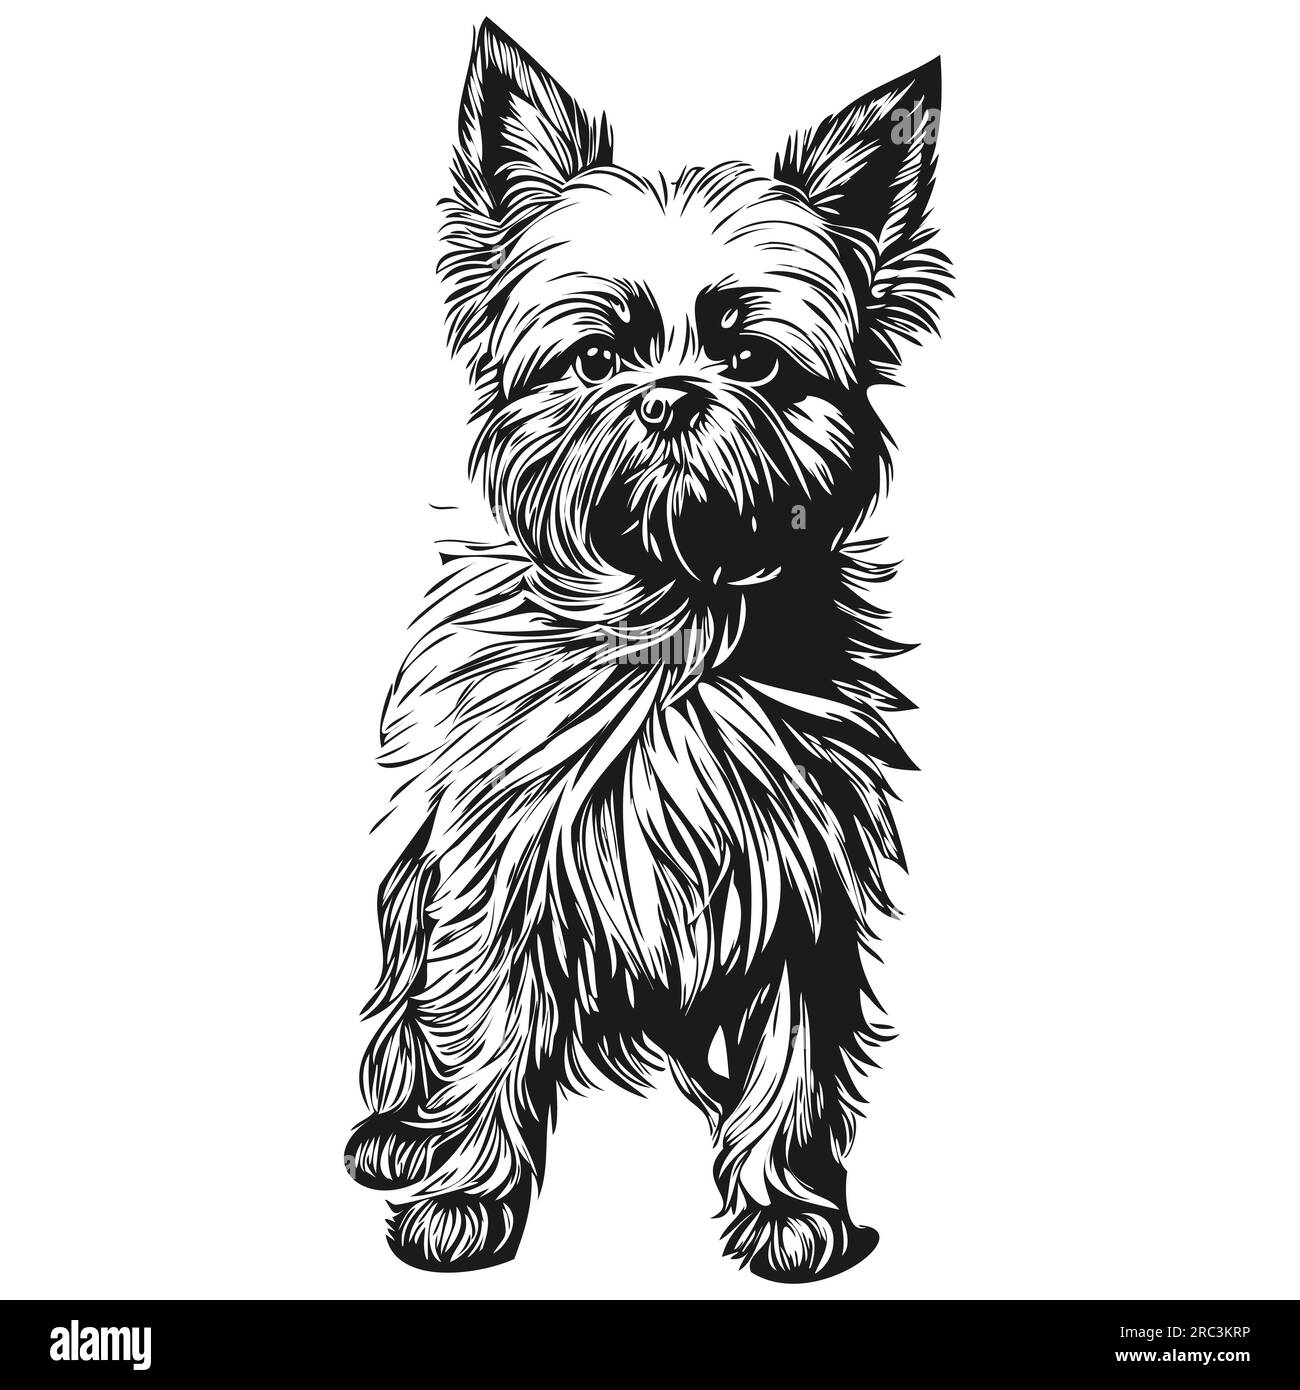 Affenpinscher chien t shirt imprimé noir et blanc, mignon dessin de contour drôle vecteur réaliste animal de compagnie Illustration de Vecteur